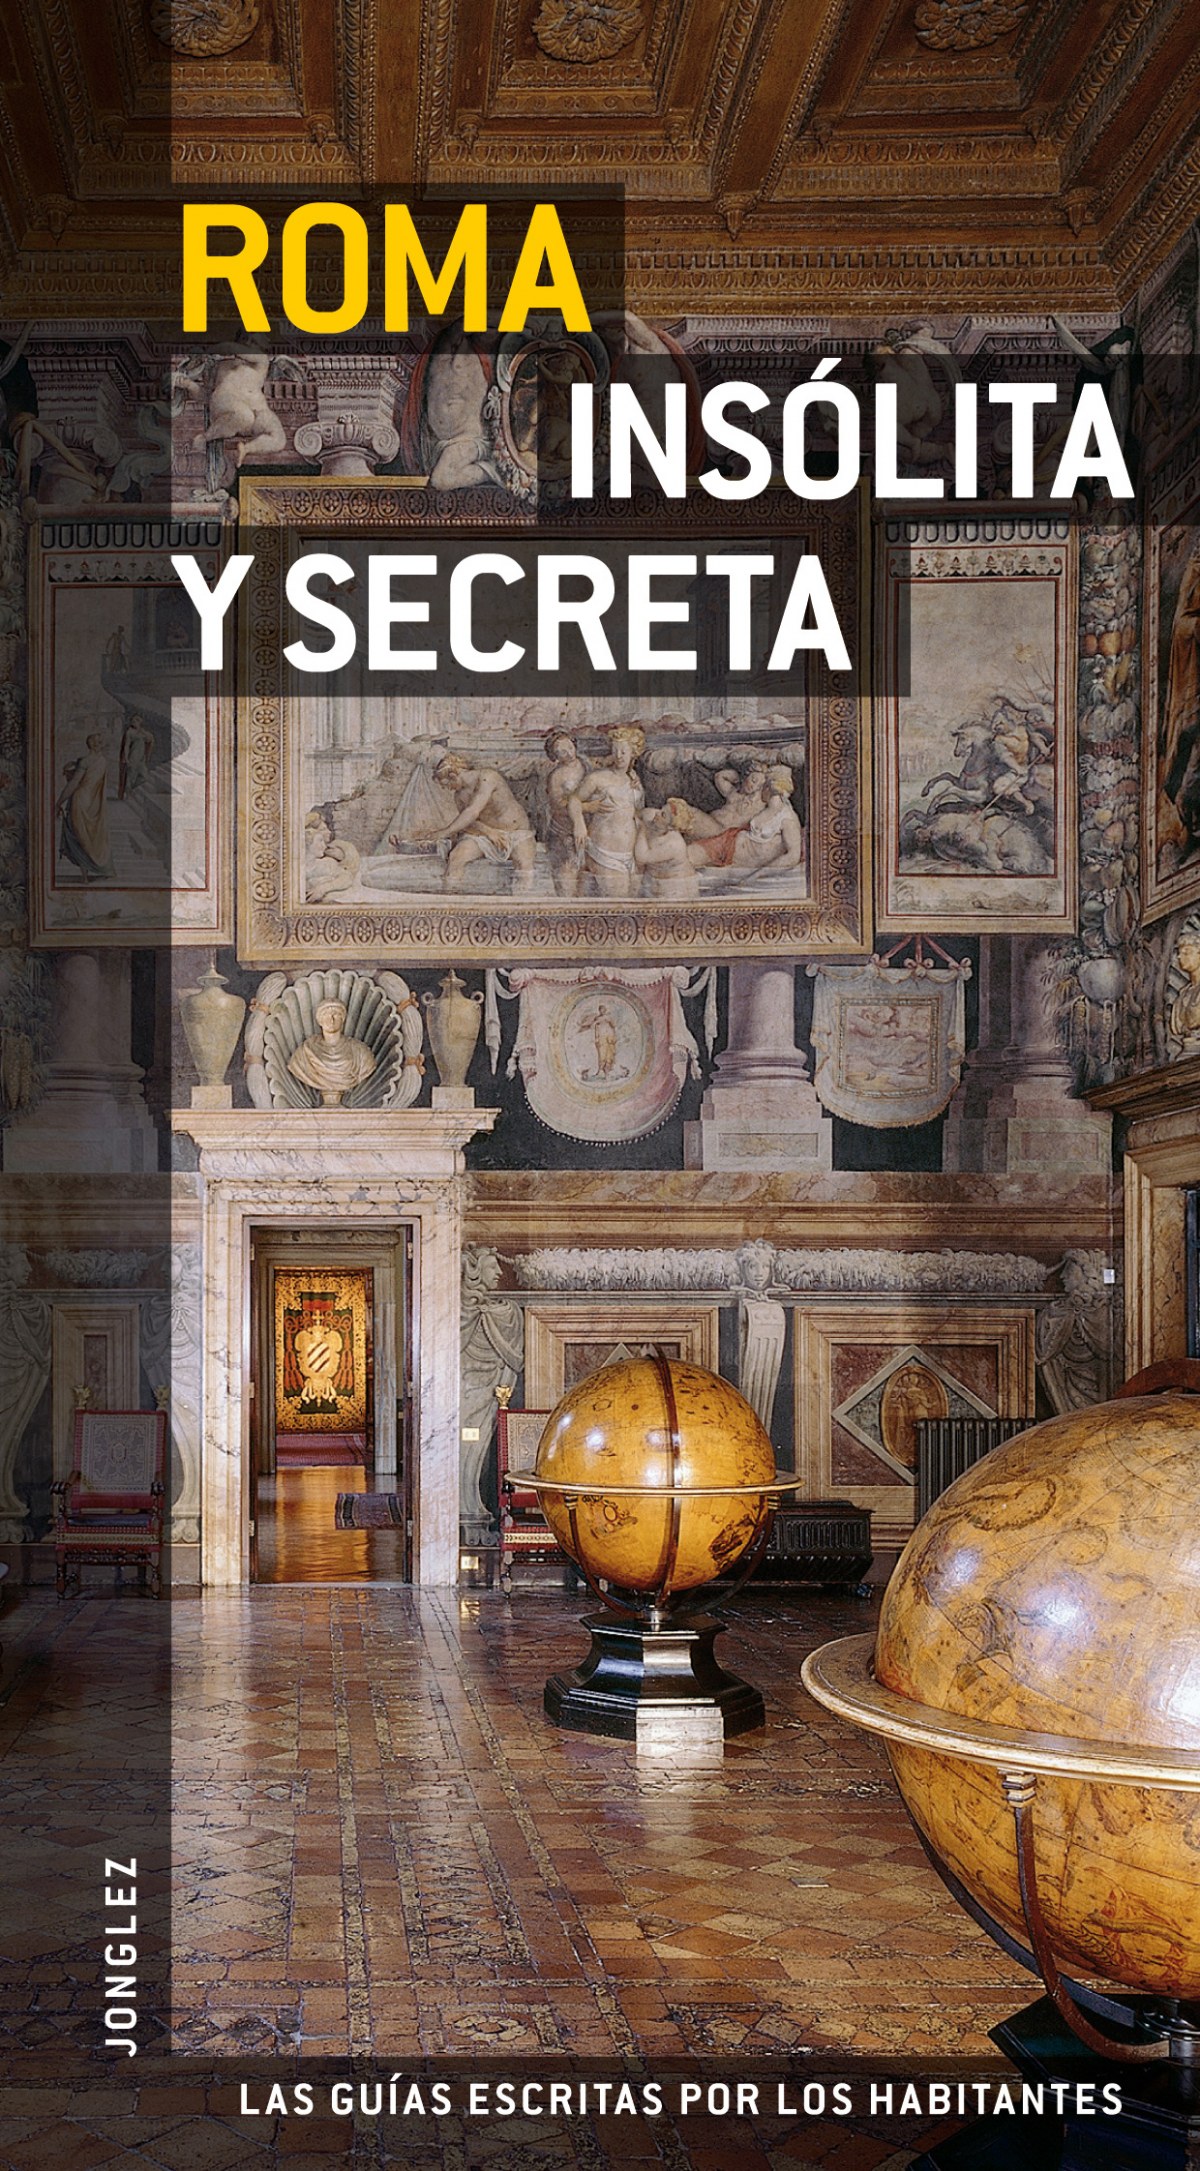 Guía Jonglez Roma insólita y secreta - Varios autores